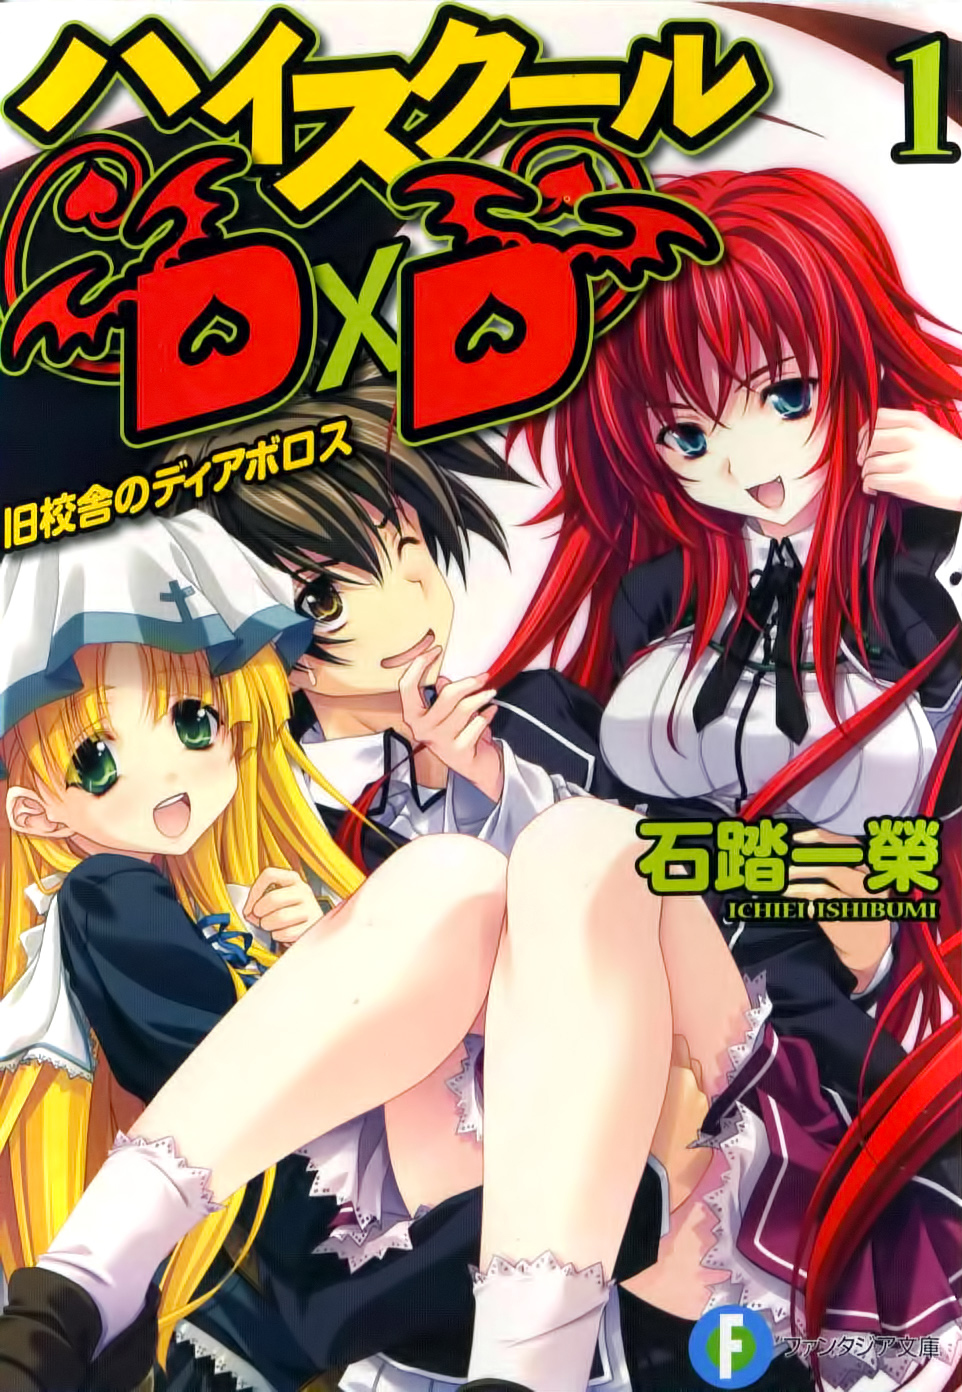 High School DxD DX.7 + Extra leaflet Set Japanese Novel Ichiei Ishibumi D×D